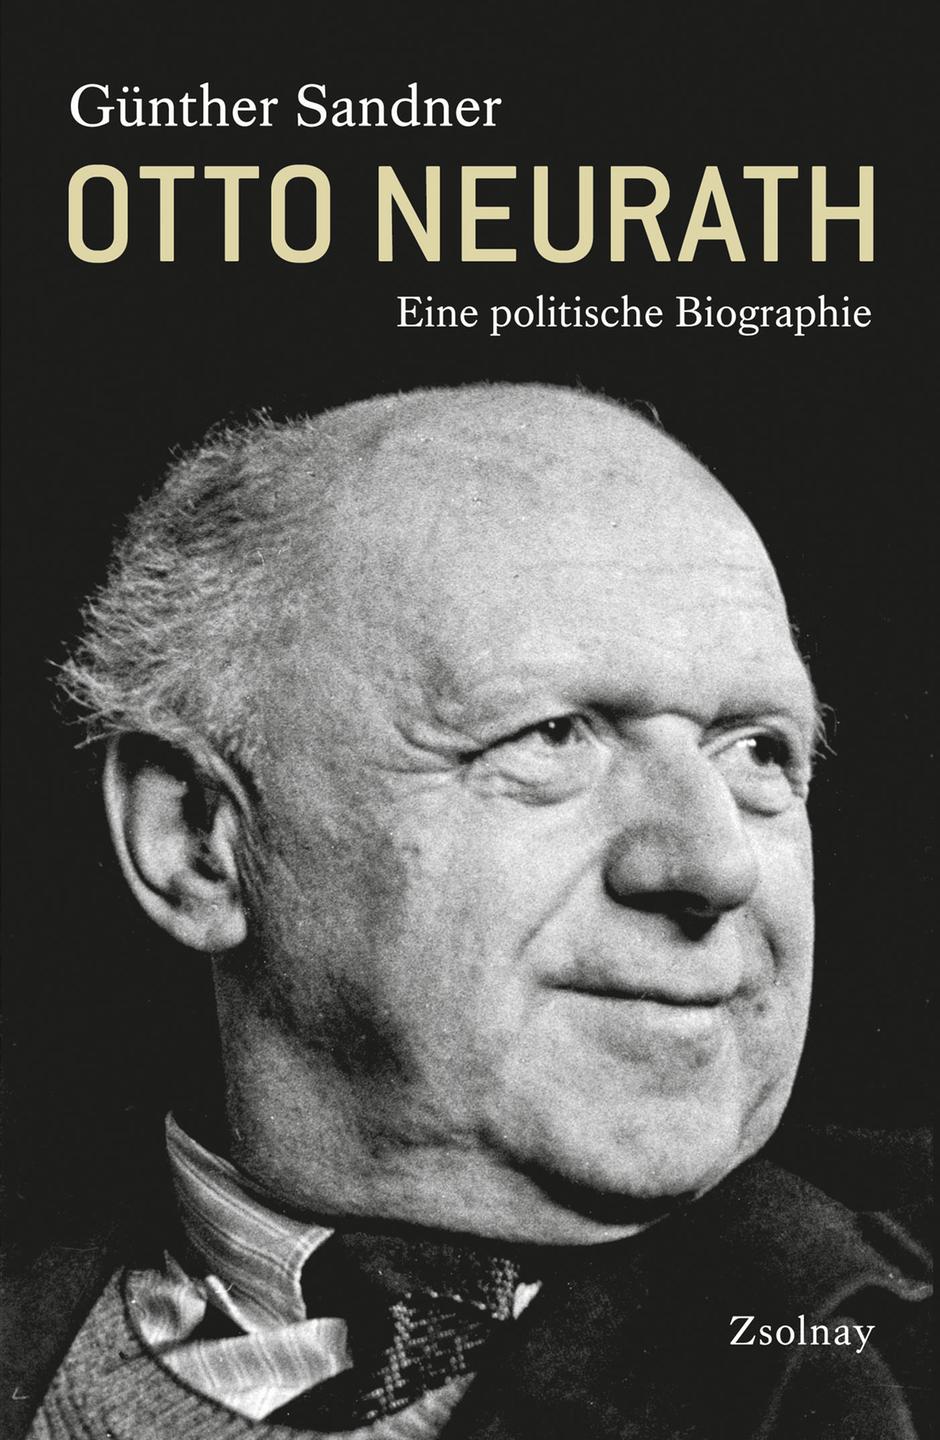 Cover: "Otto Neurath - Eine politische Biographie" von Günther Sandner